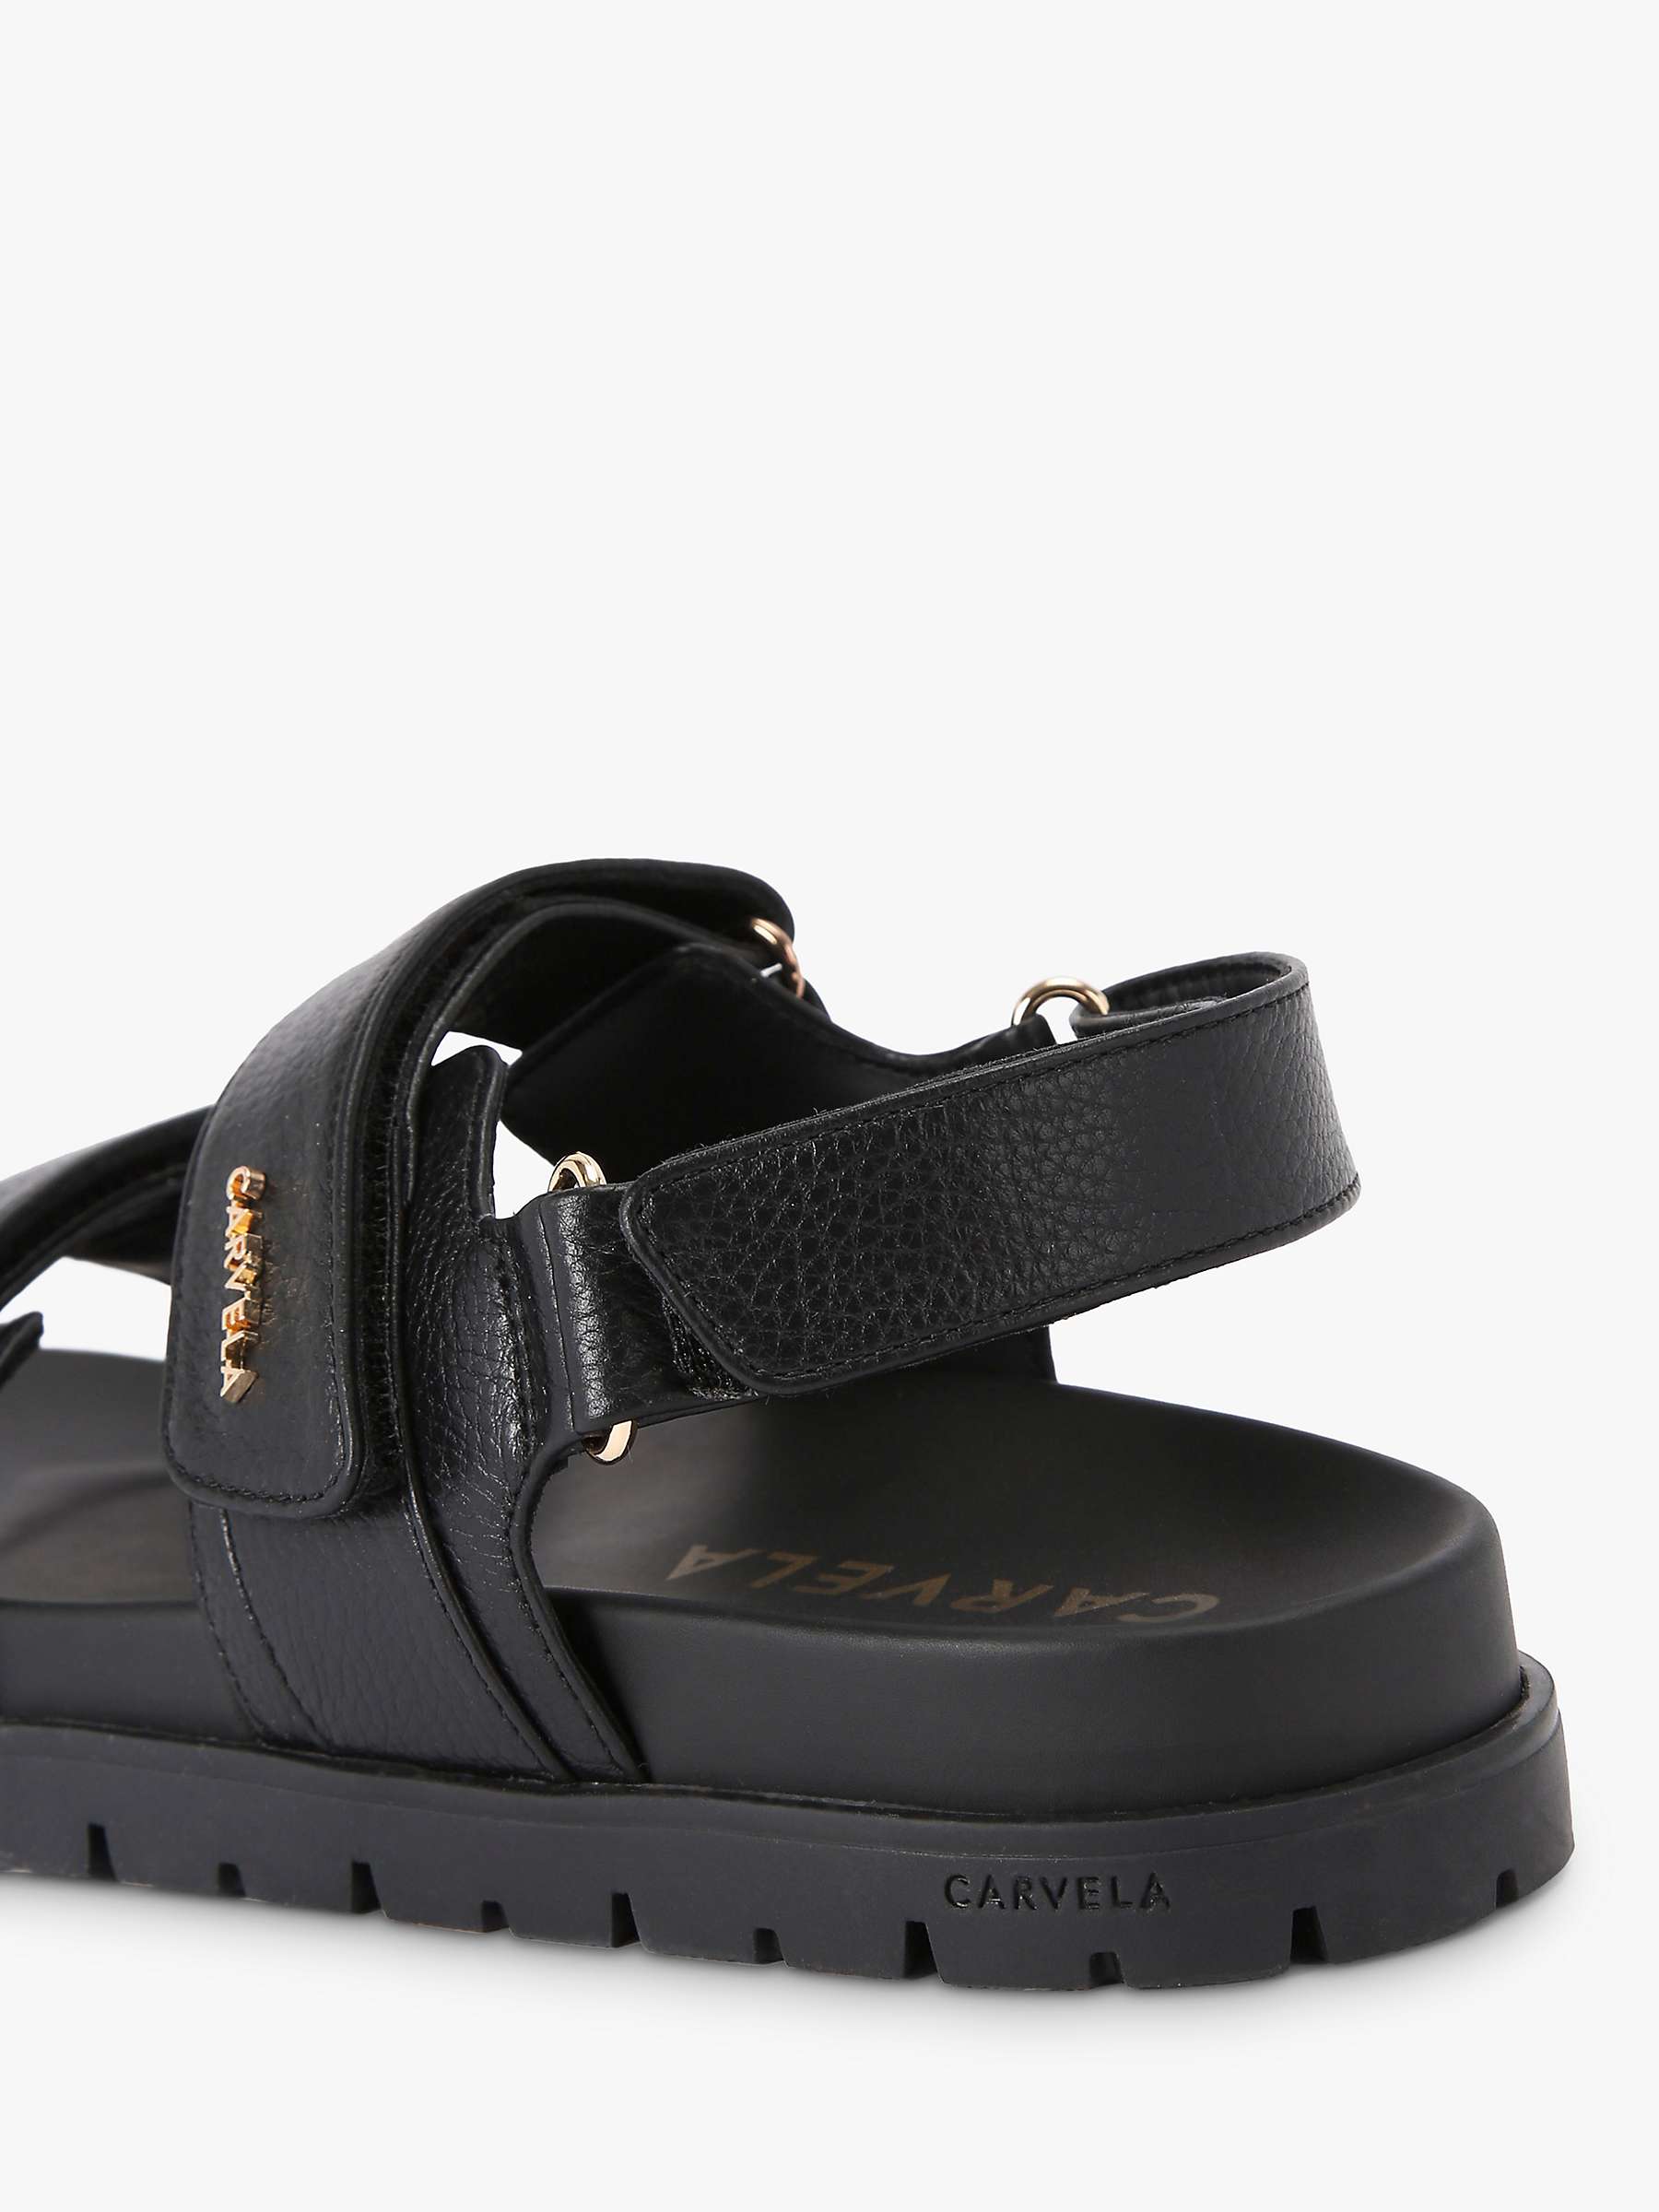 Buy Carvela Fame Leather Footbed Sandals Online at johnlewis.com